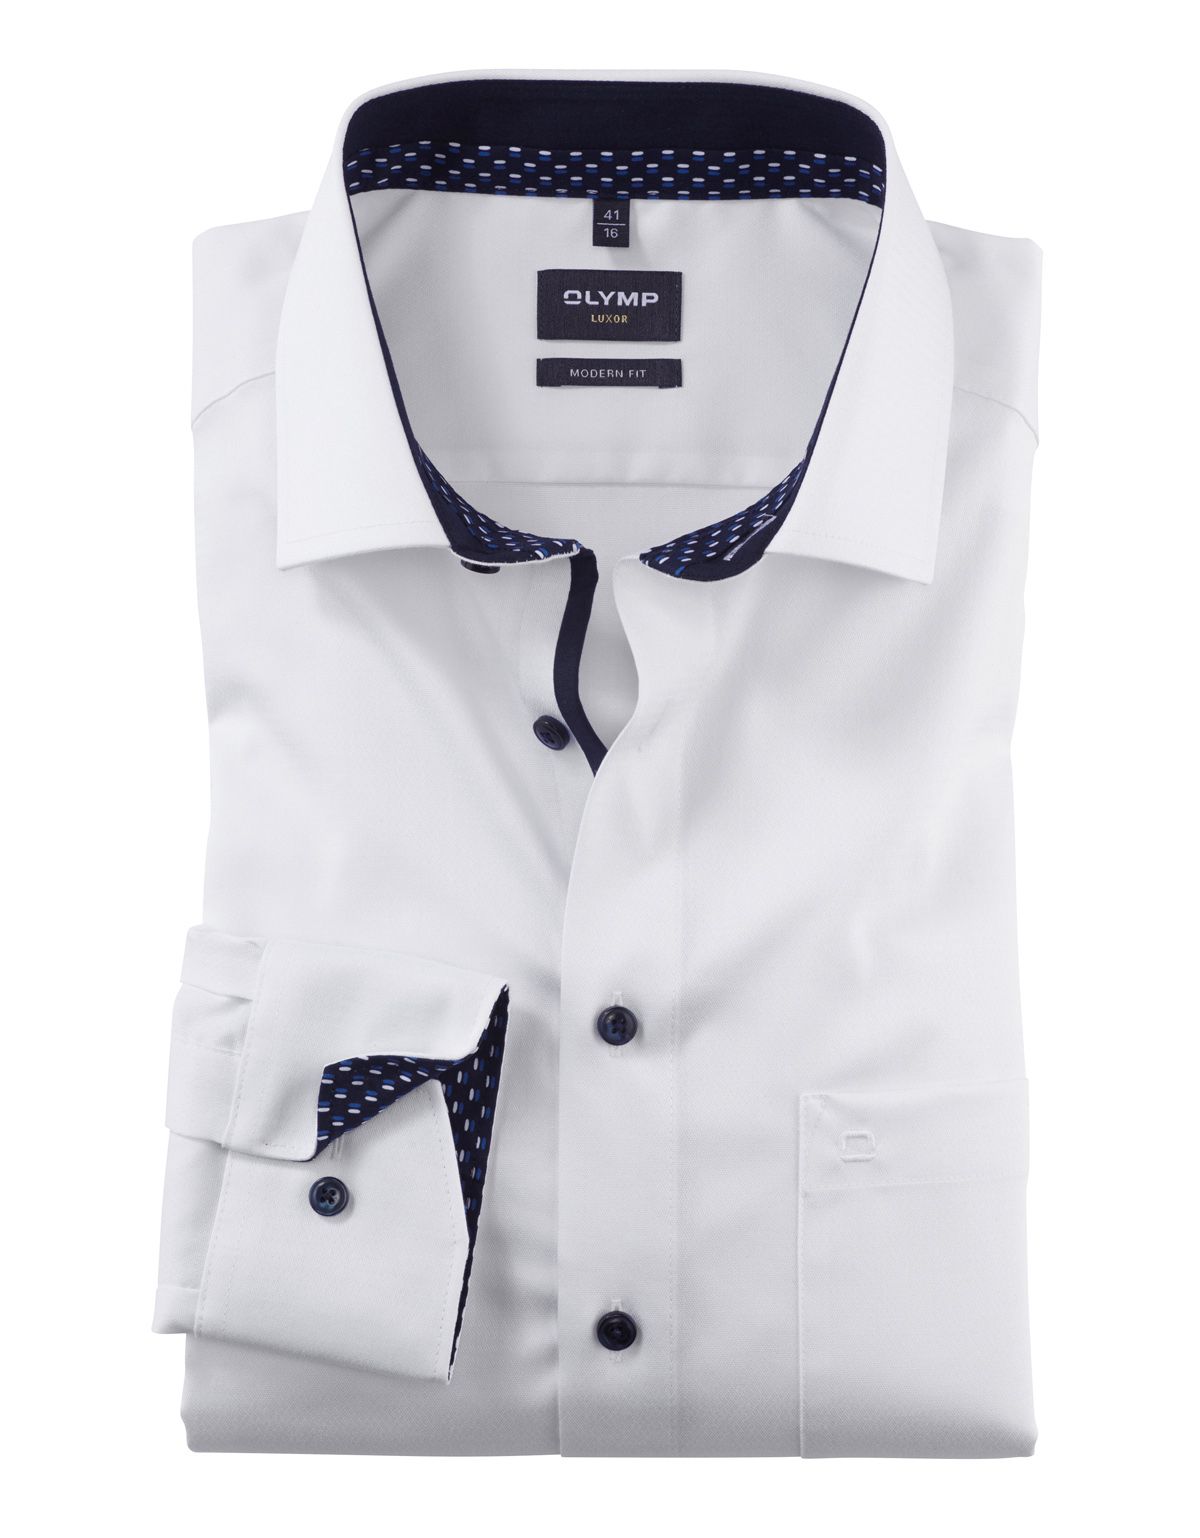 Рубашка мужская OLYMP Luxor, modern fit, фактурная ткань, рост до 176[Белый]